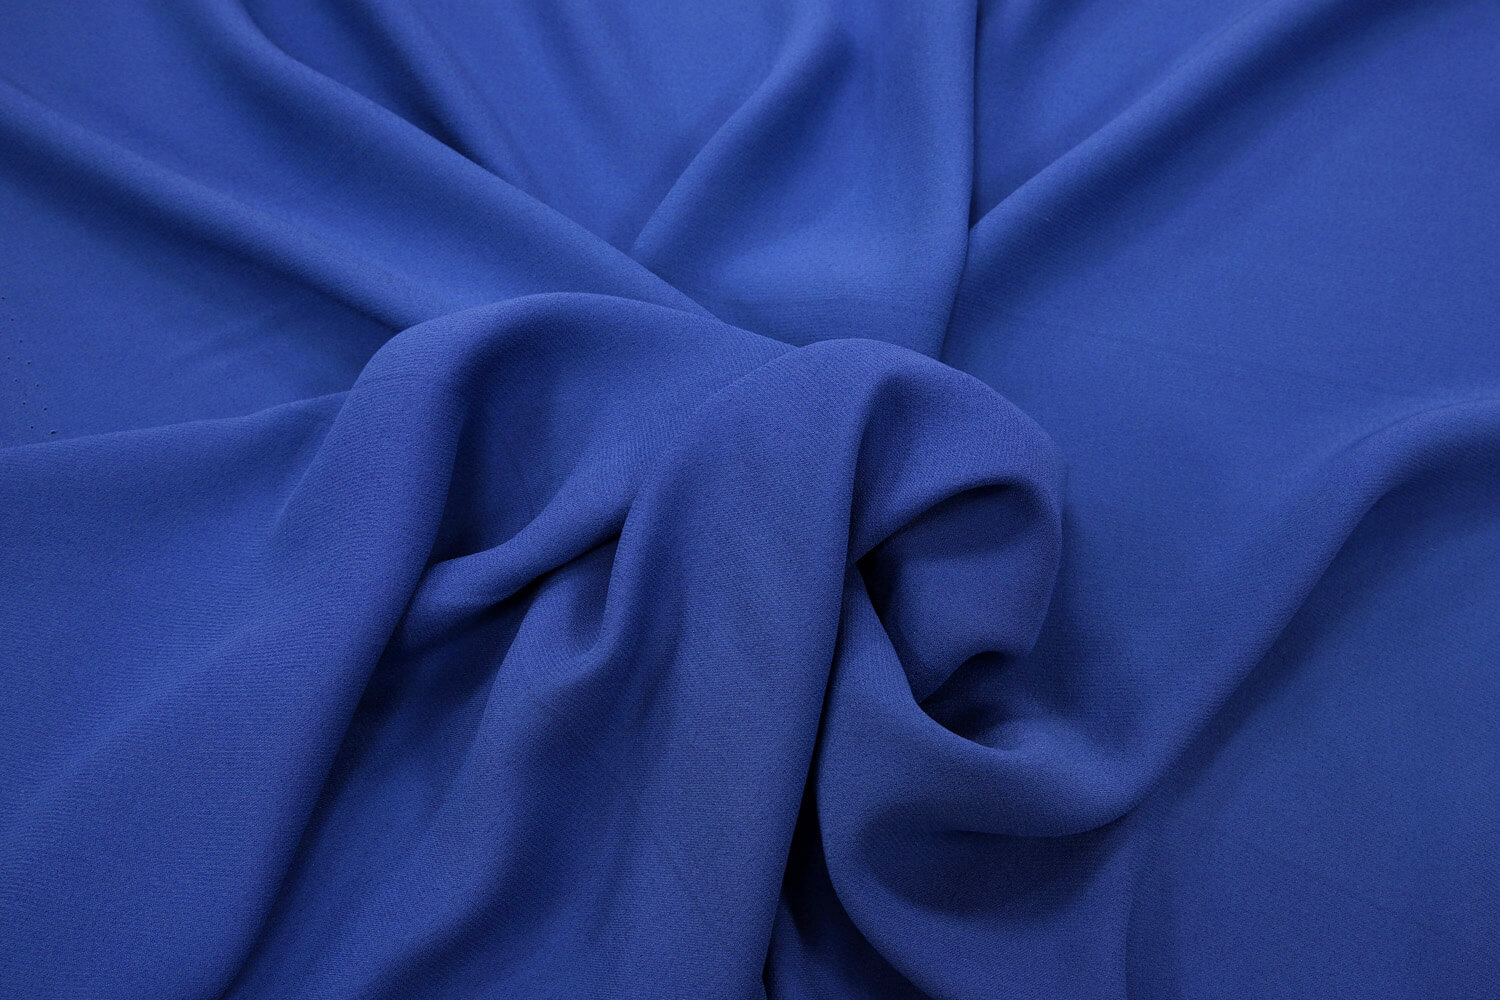 Шелковый крепдешин Christopher Kane, цвет Синий, фото 1